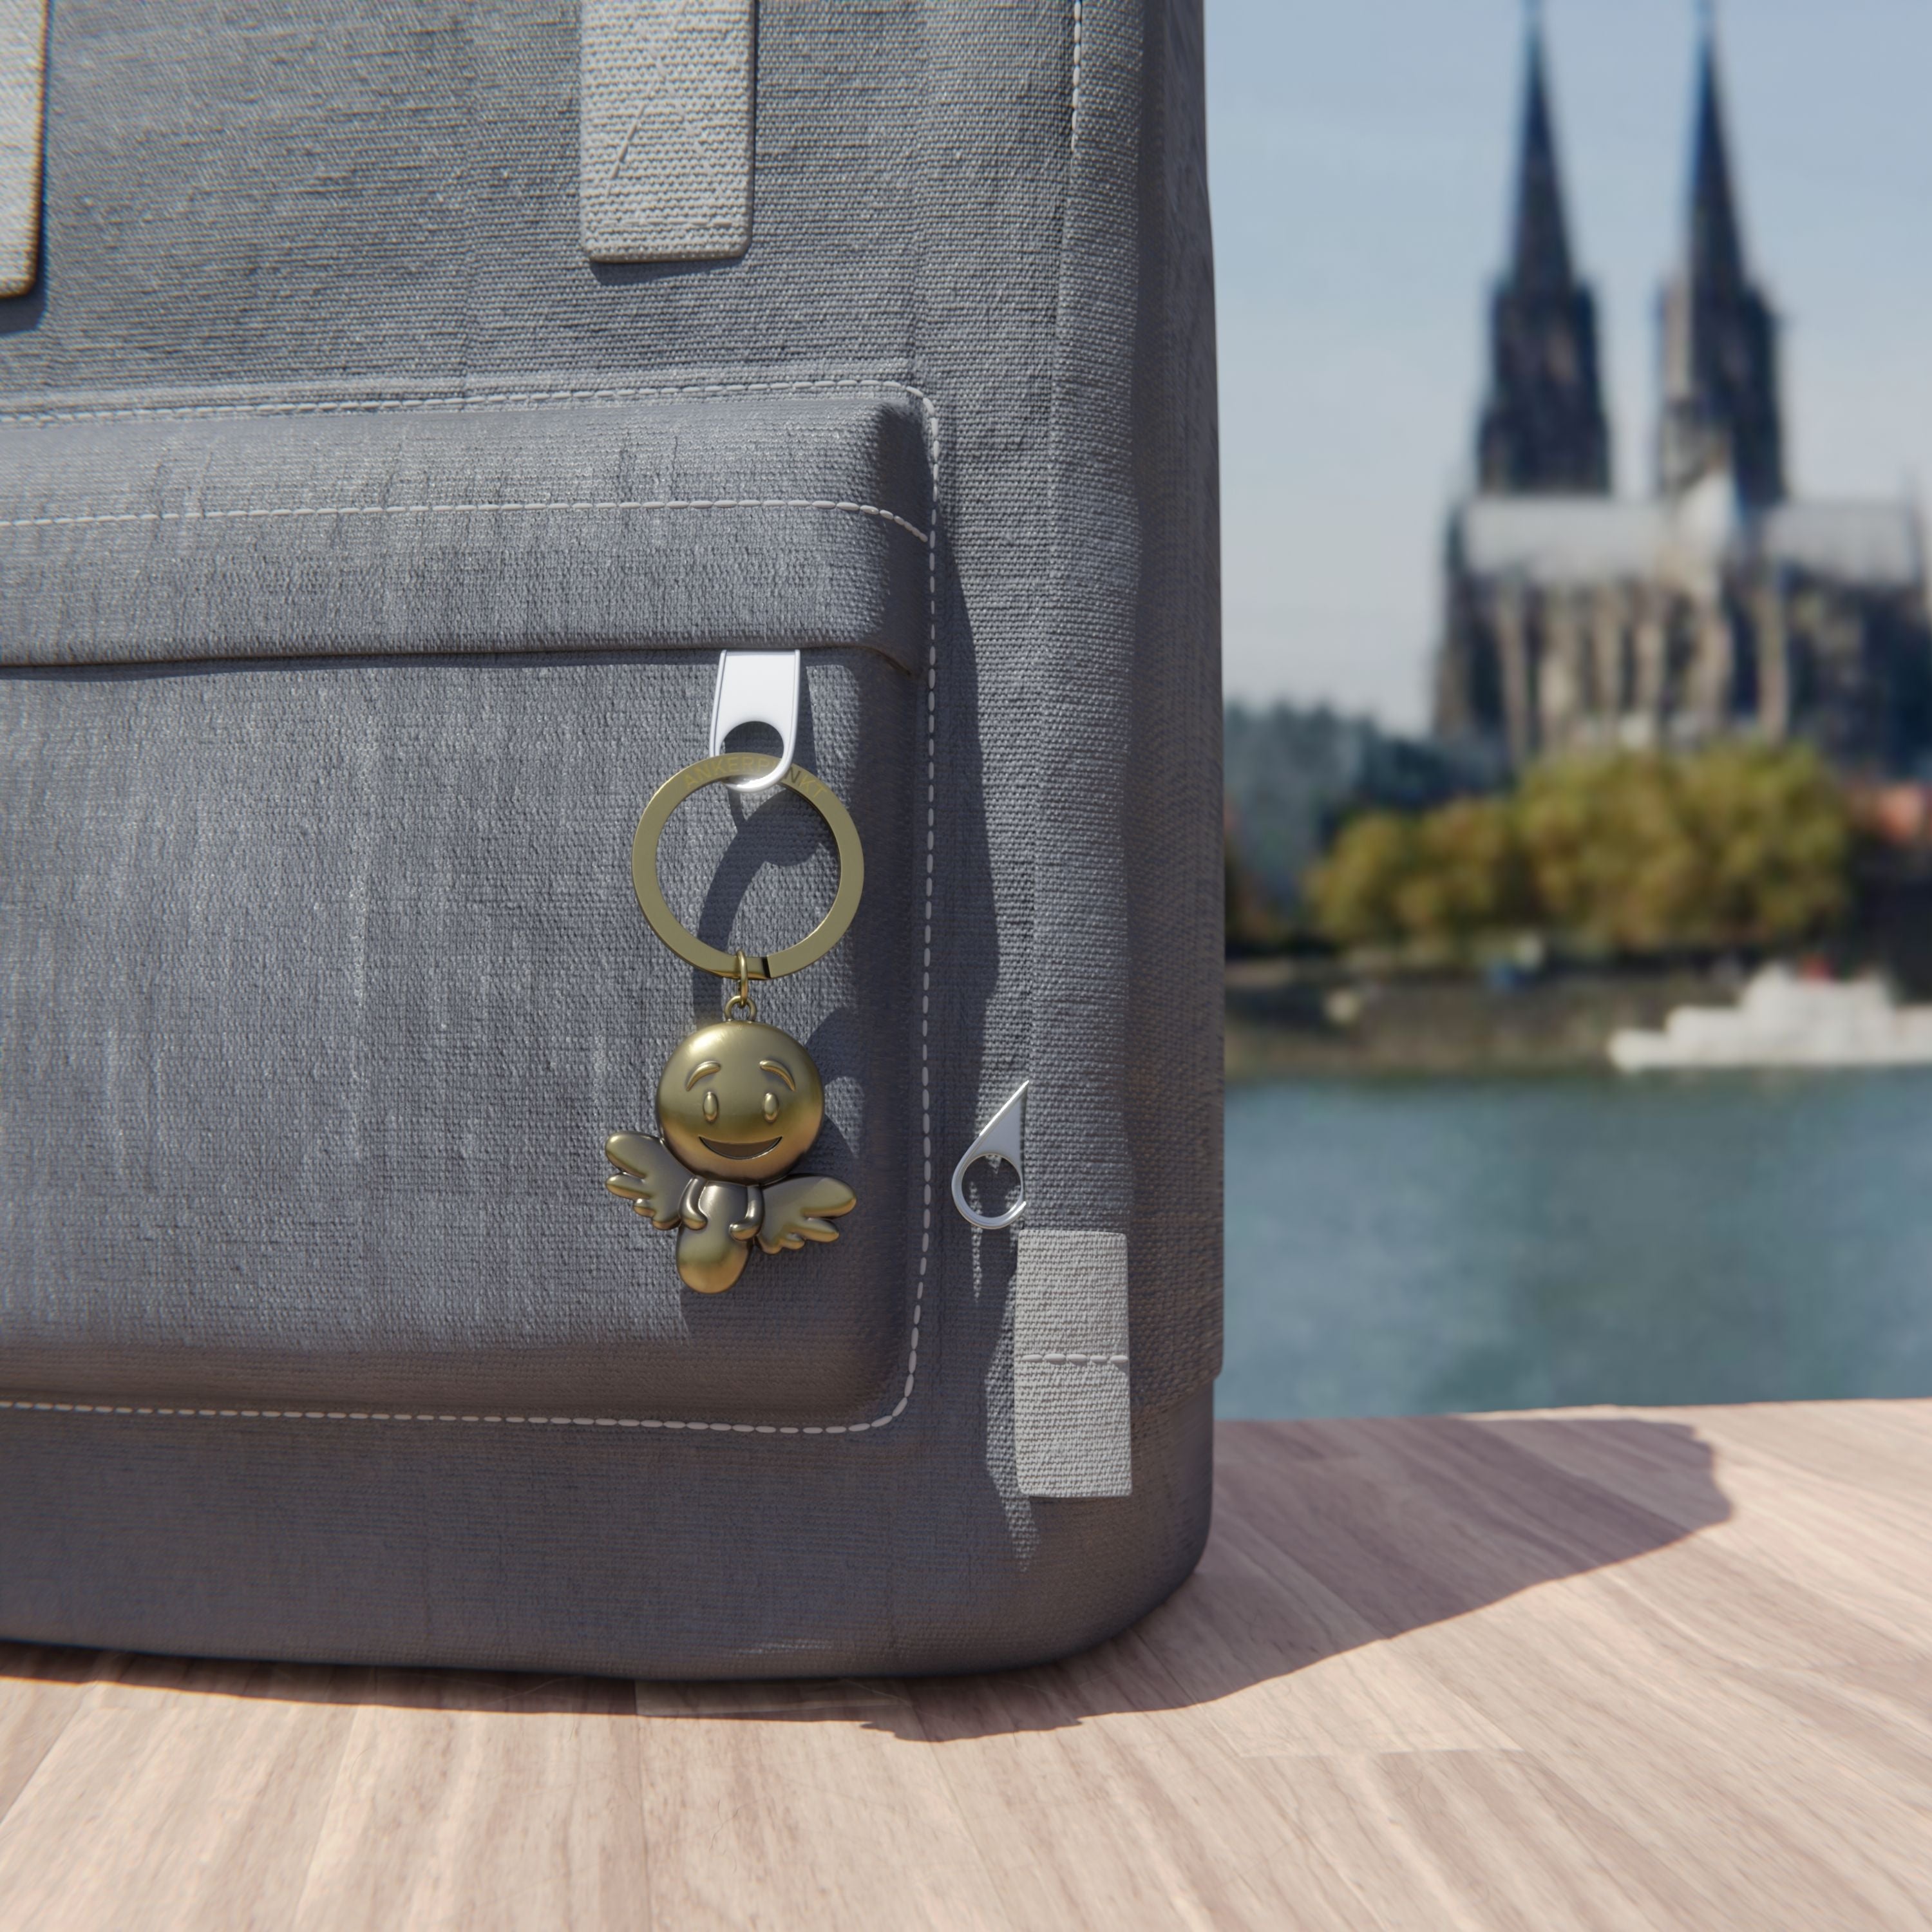 Schlüsselanhänger Engel gold vintage mit Rucksack am Rhein, im Hintergrund ist der Kölner Dom zu sehen